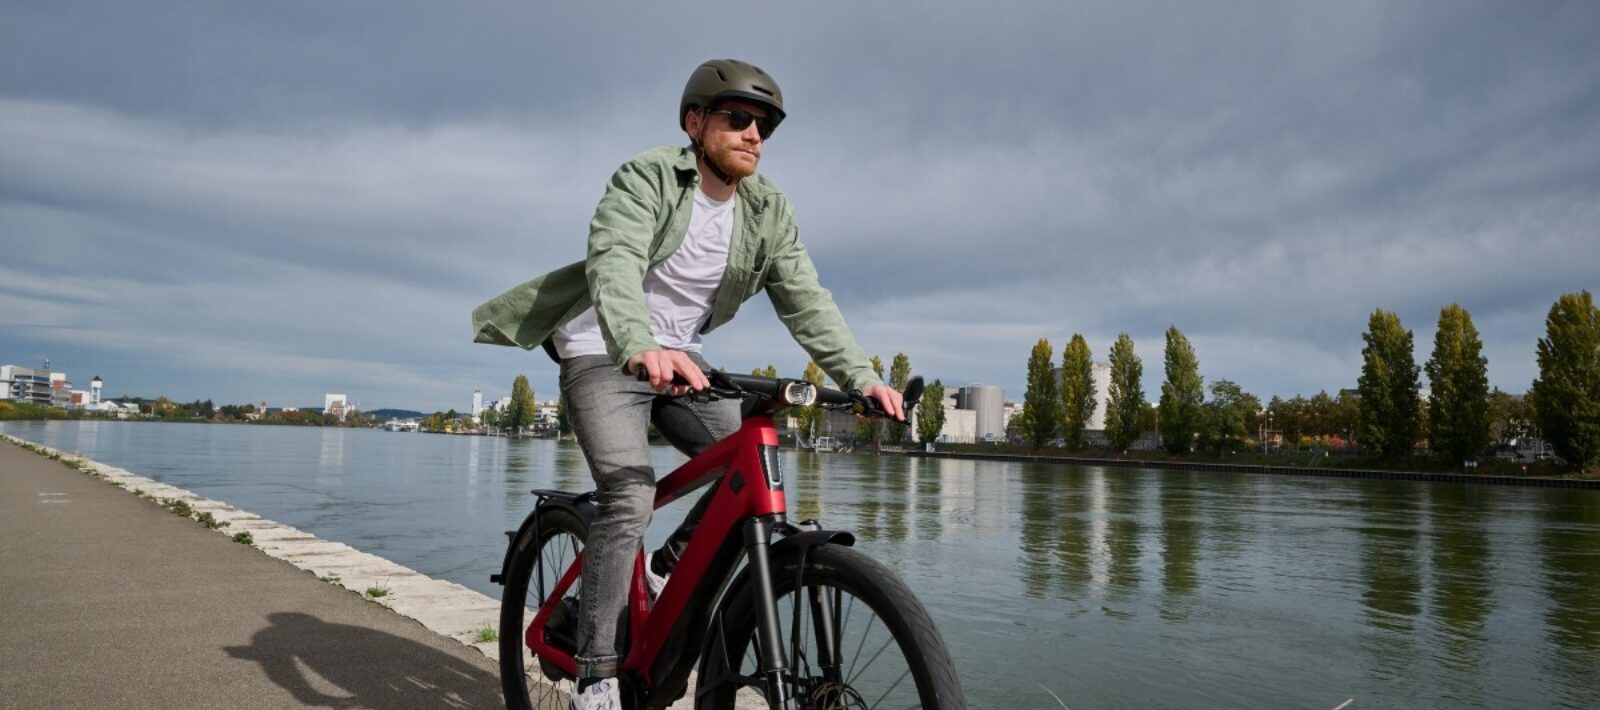 In België is het niet verplicht om een helm te dragen op een e-bike die ondersteunt wordt tot 25km/h, maar wel voor speed pedelec-gebruikers.